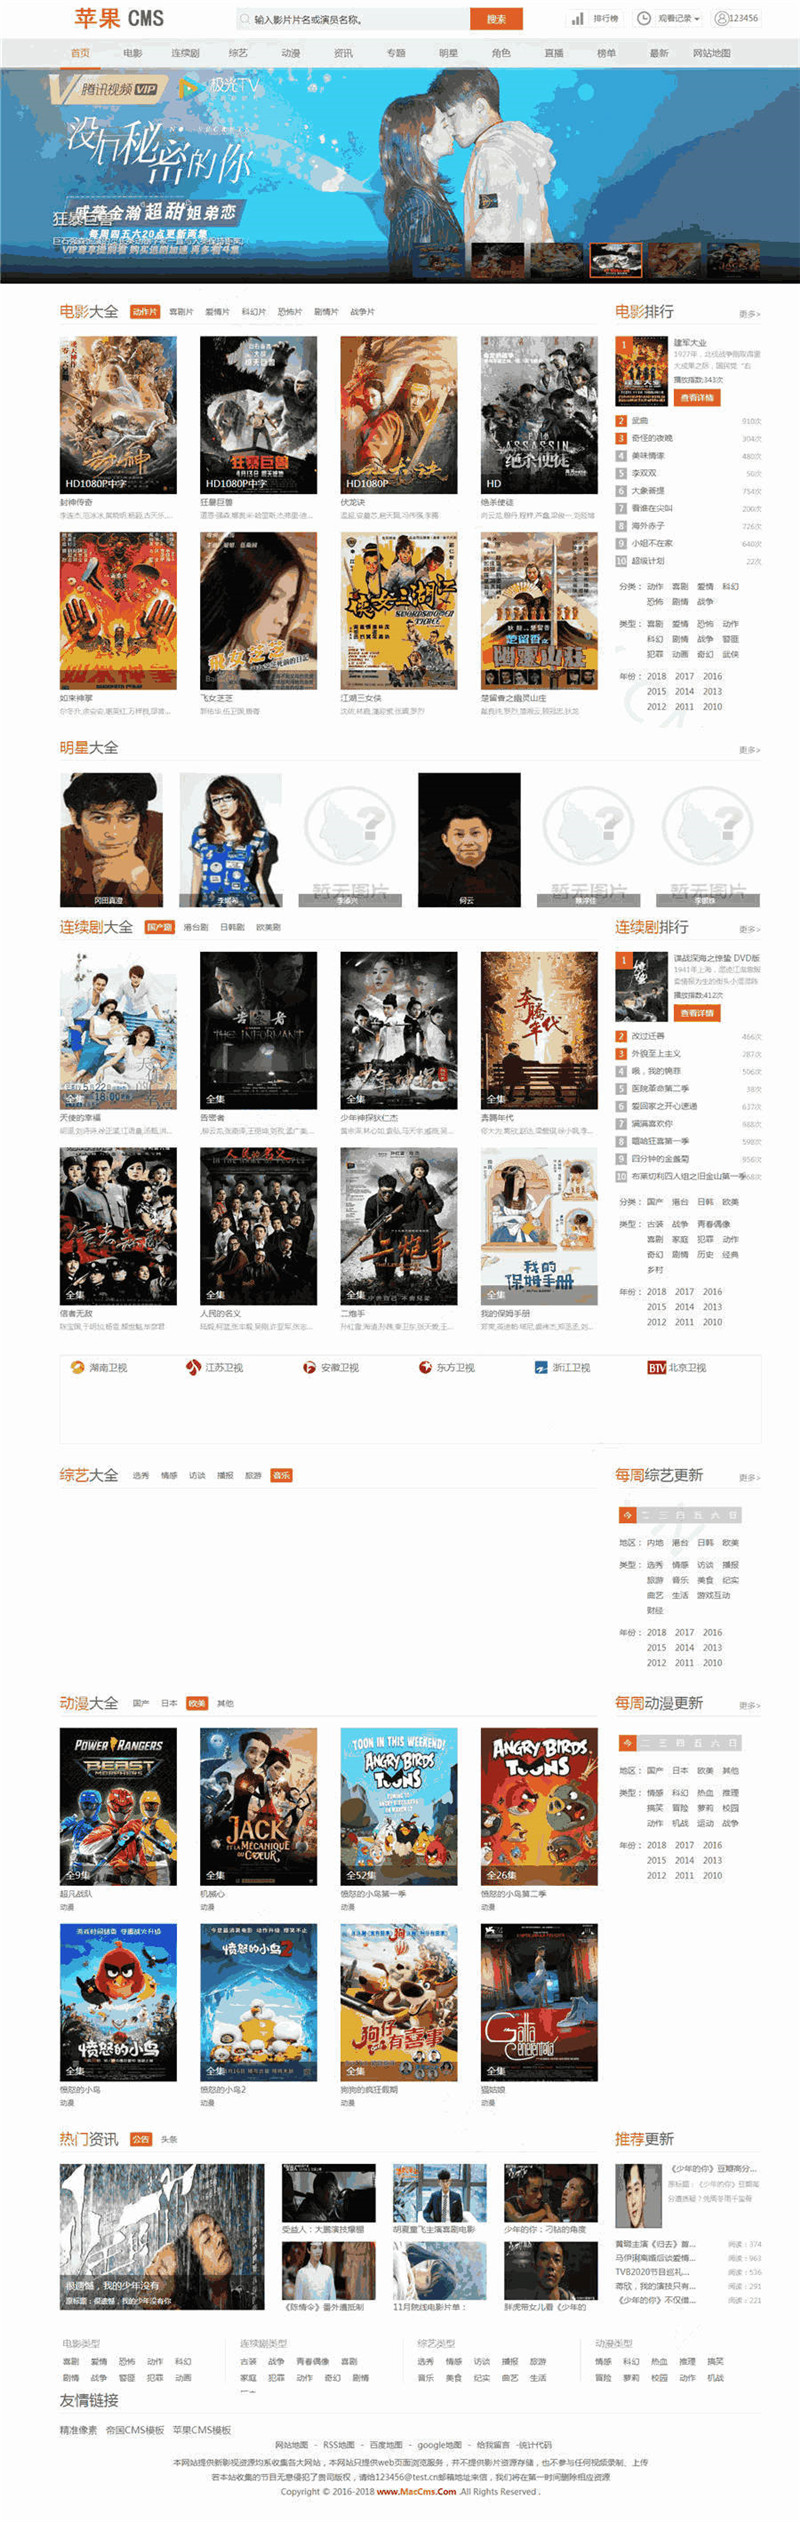 赞片综合影视网站苹果CMS模板预览图